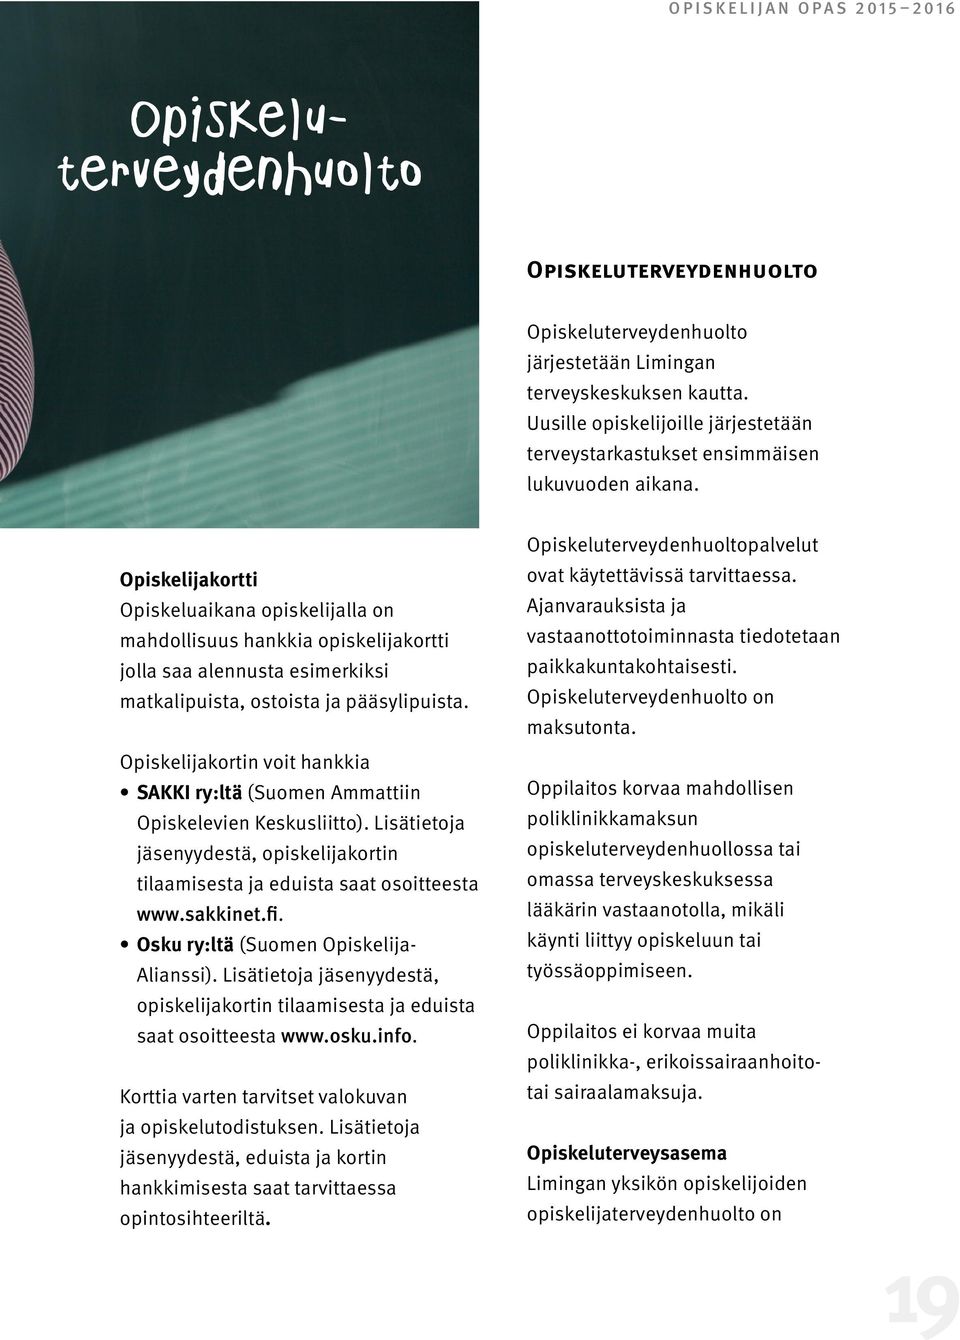 Osku ry:ltä (Suomen Opiskelija- Alianssi). Lisätietoja jäsenyydestä, opiskelijakortin tilaamisesta ja eduista saat osoitteesta www.osku.info. Korttia varten tarvitset valokuvan ja opiskelutodistuksen.